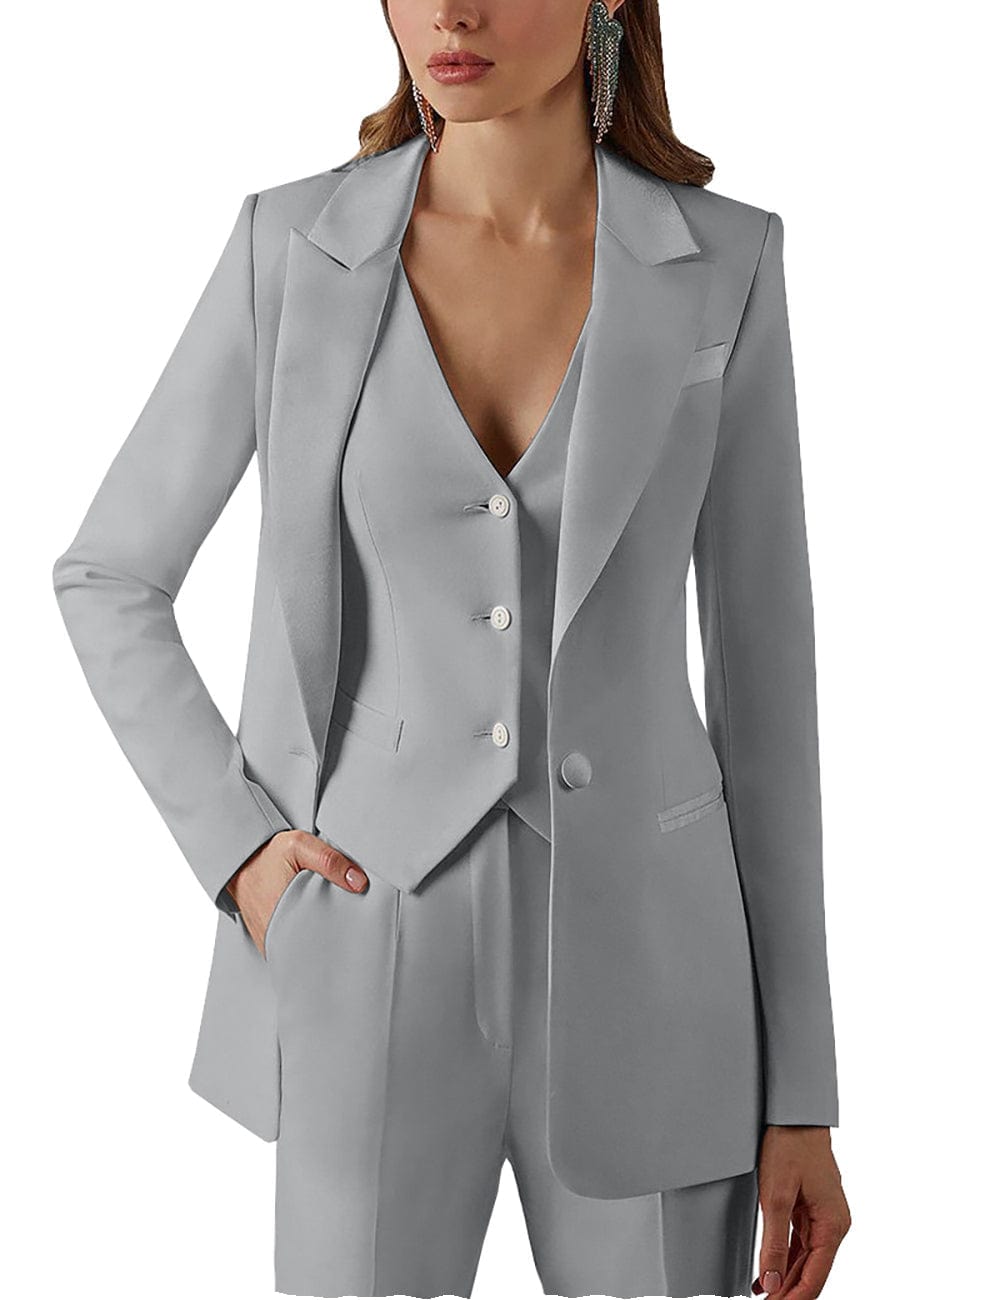 3 Pieces Single Buttons Peak Lapel Women Suit (Blazer+vest+Pants)